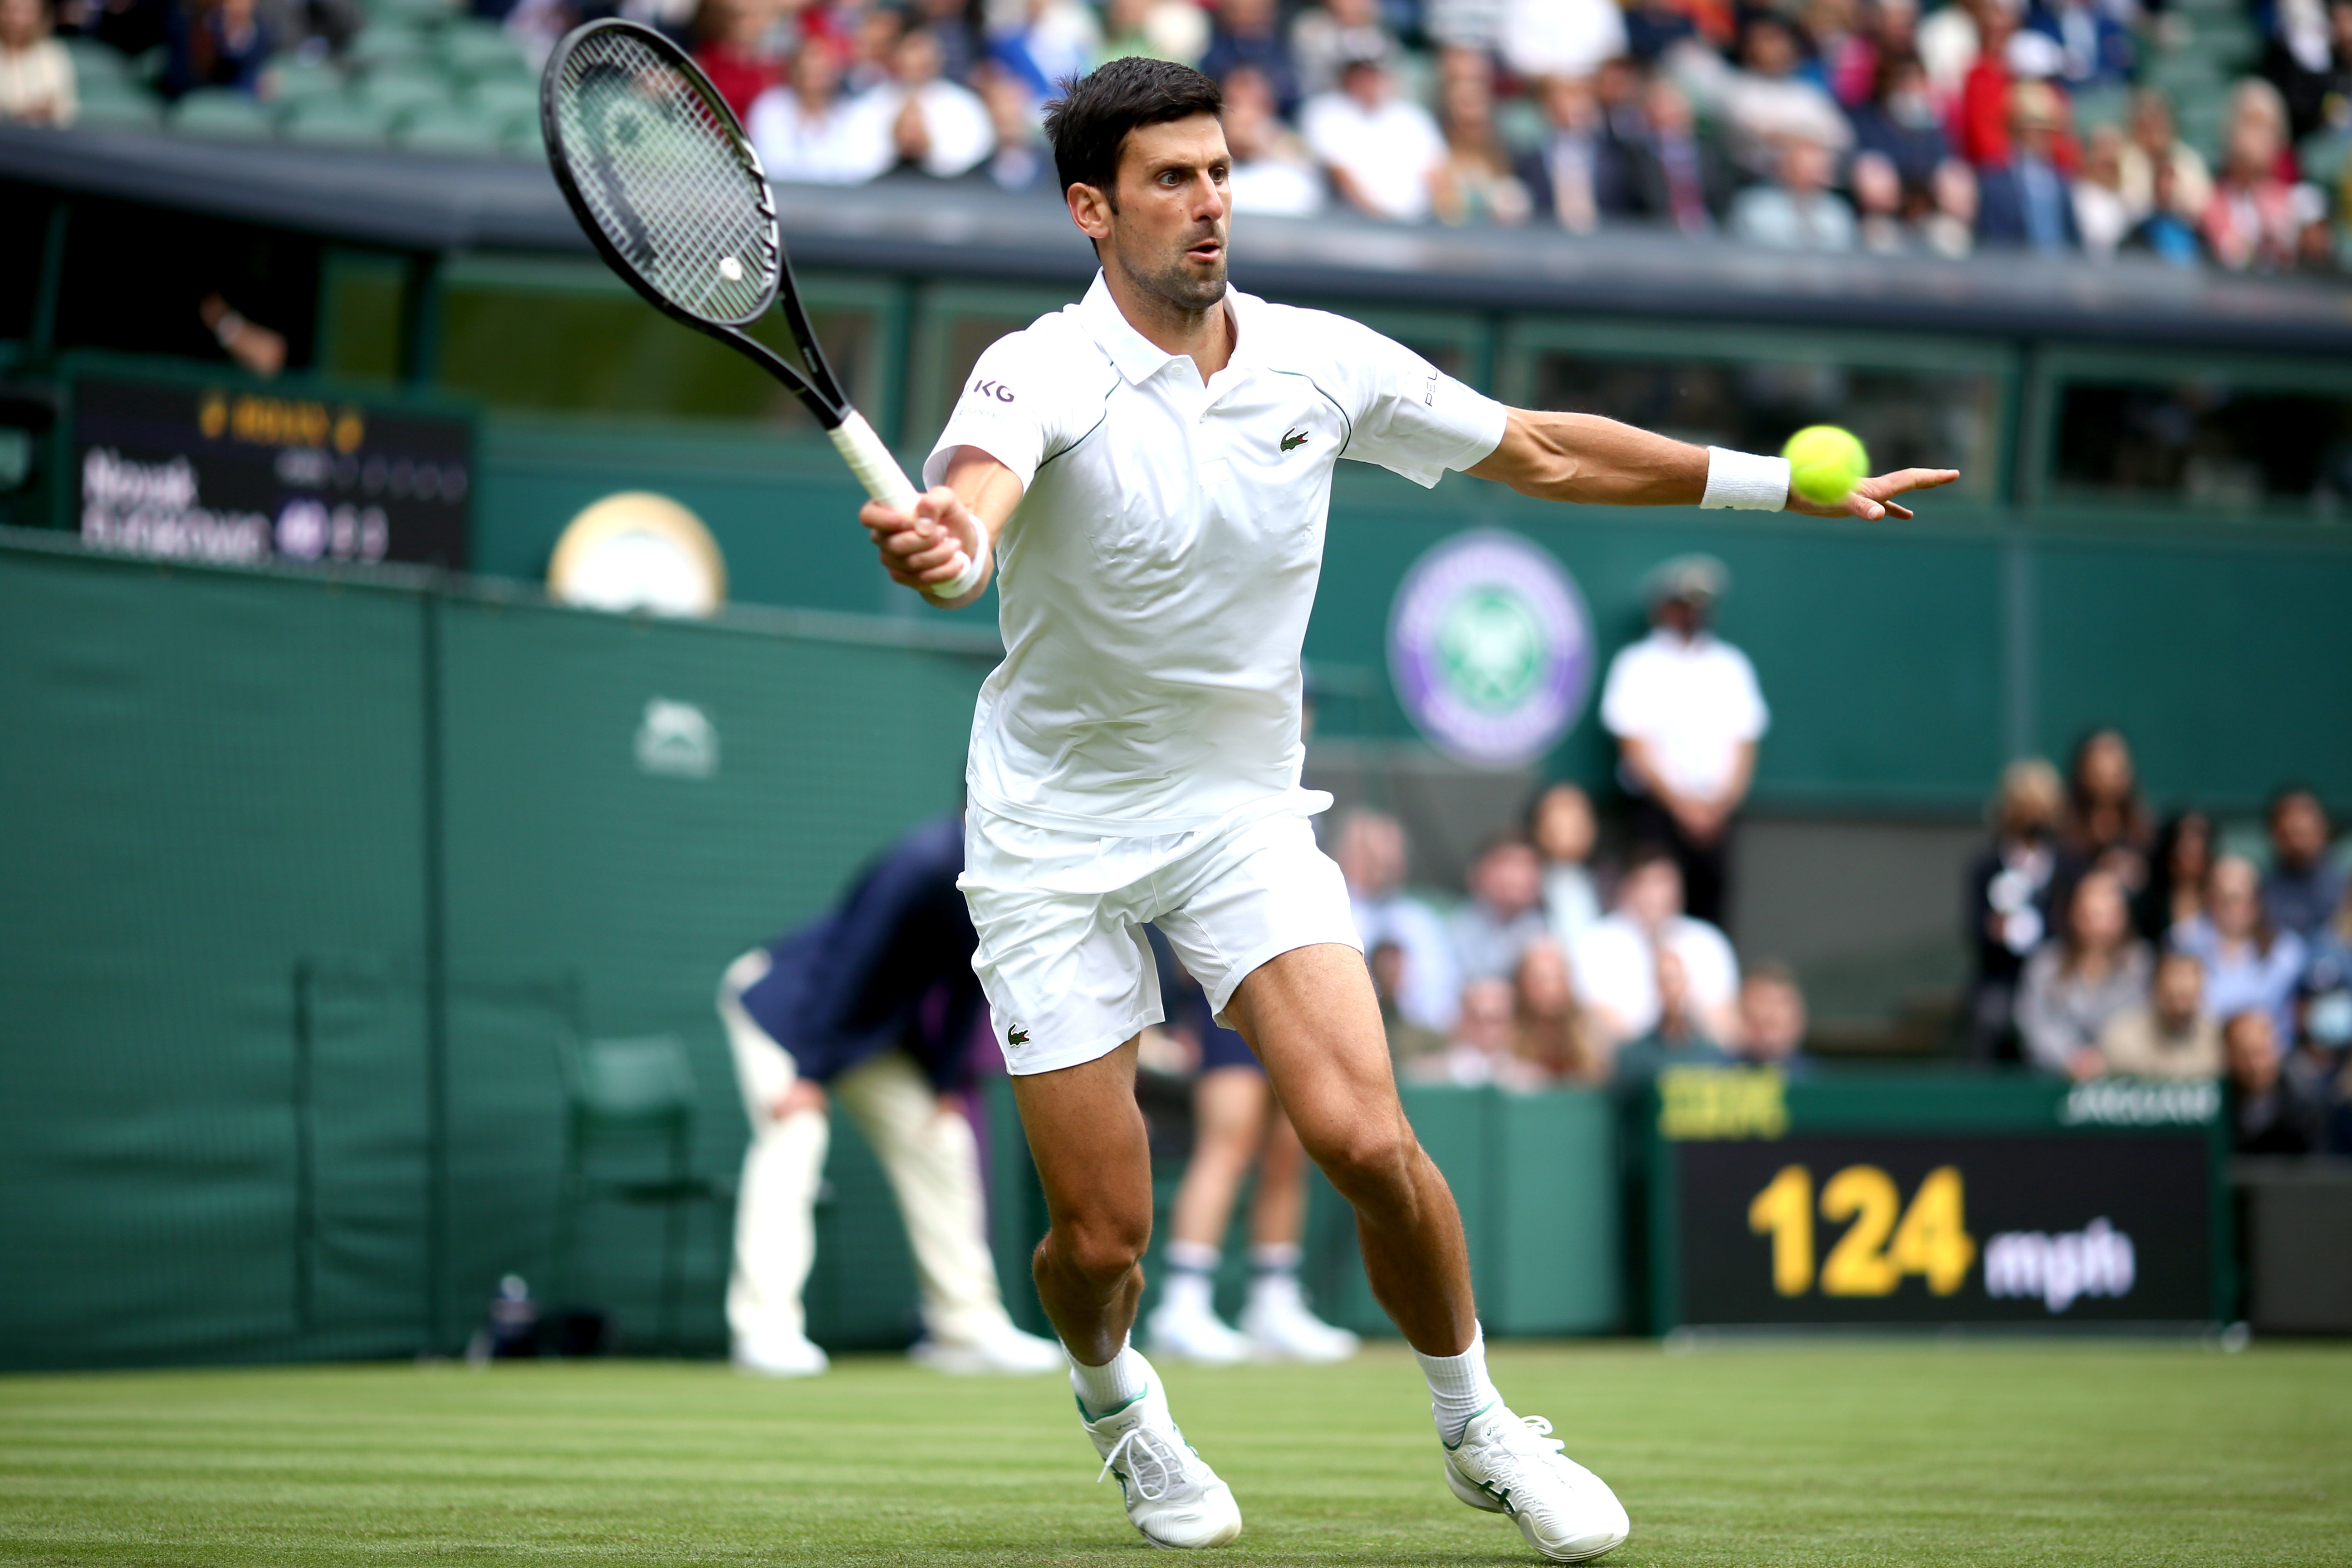 Novak Djokovic eased through to the third round at Wimbledon